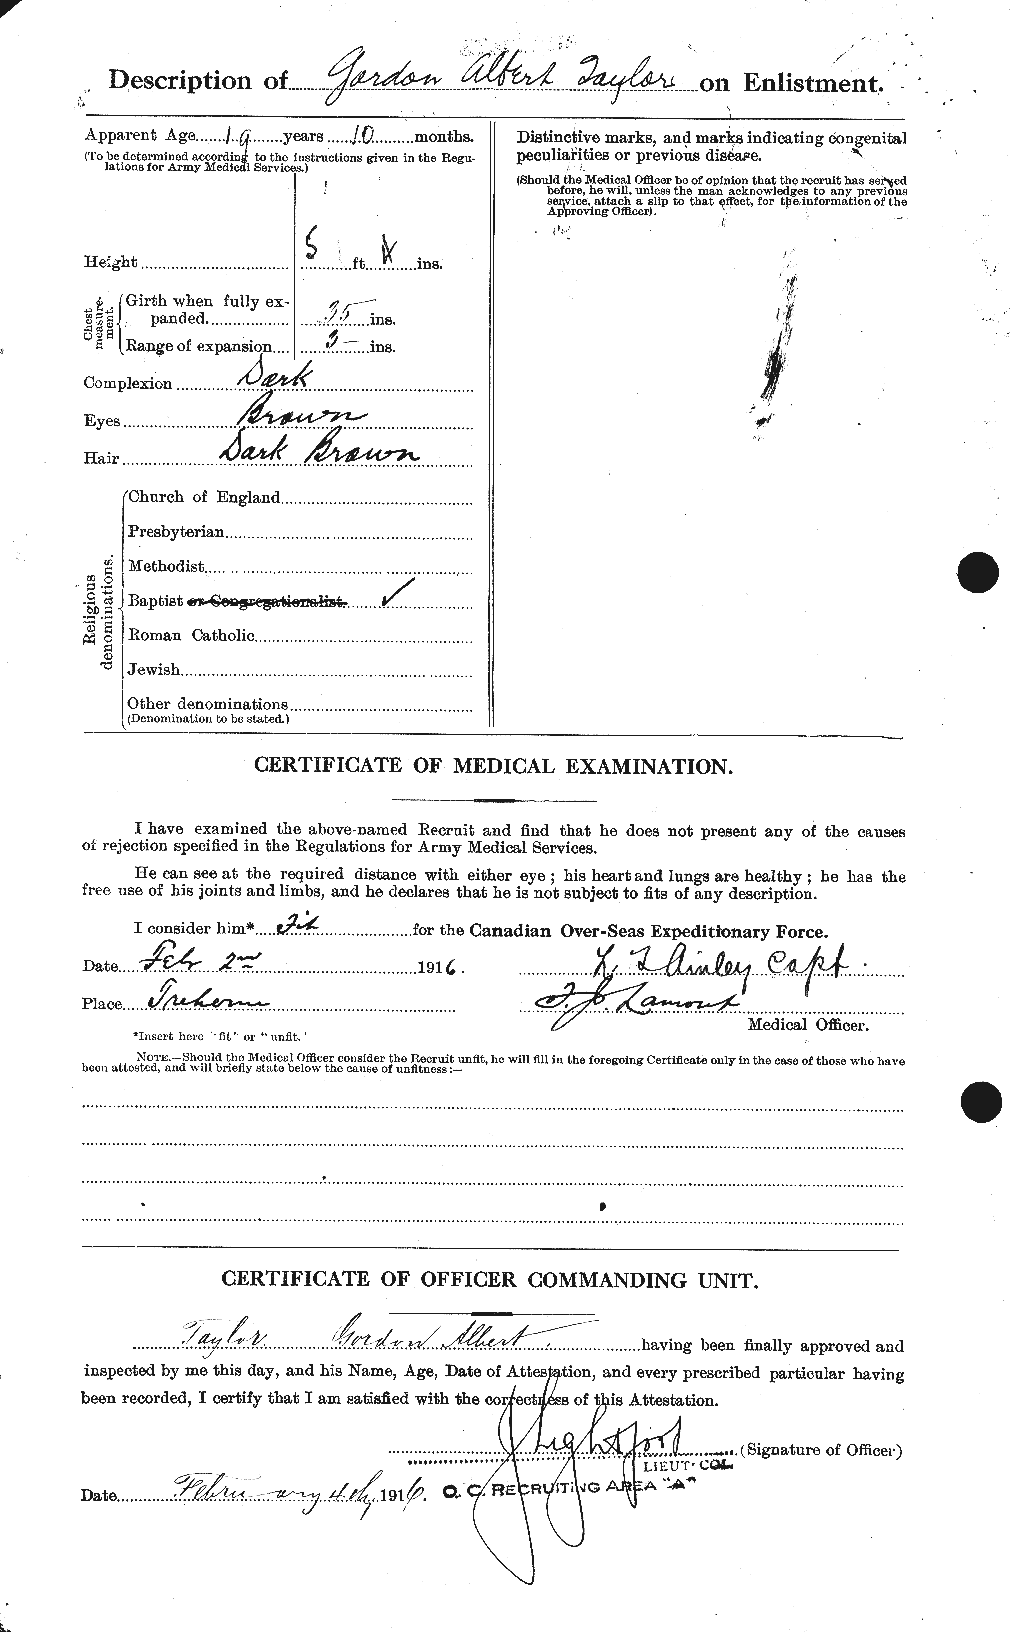 Dossiers du Personnel de la Première Guerre mondiale - CEC 626385b